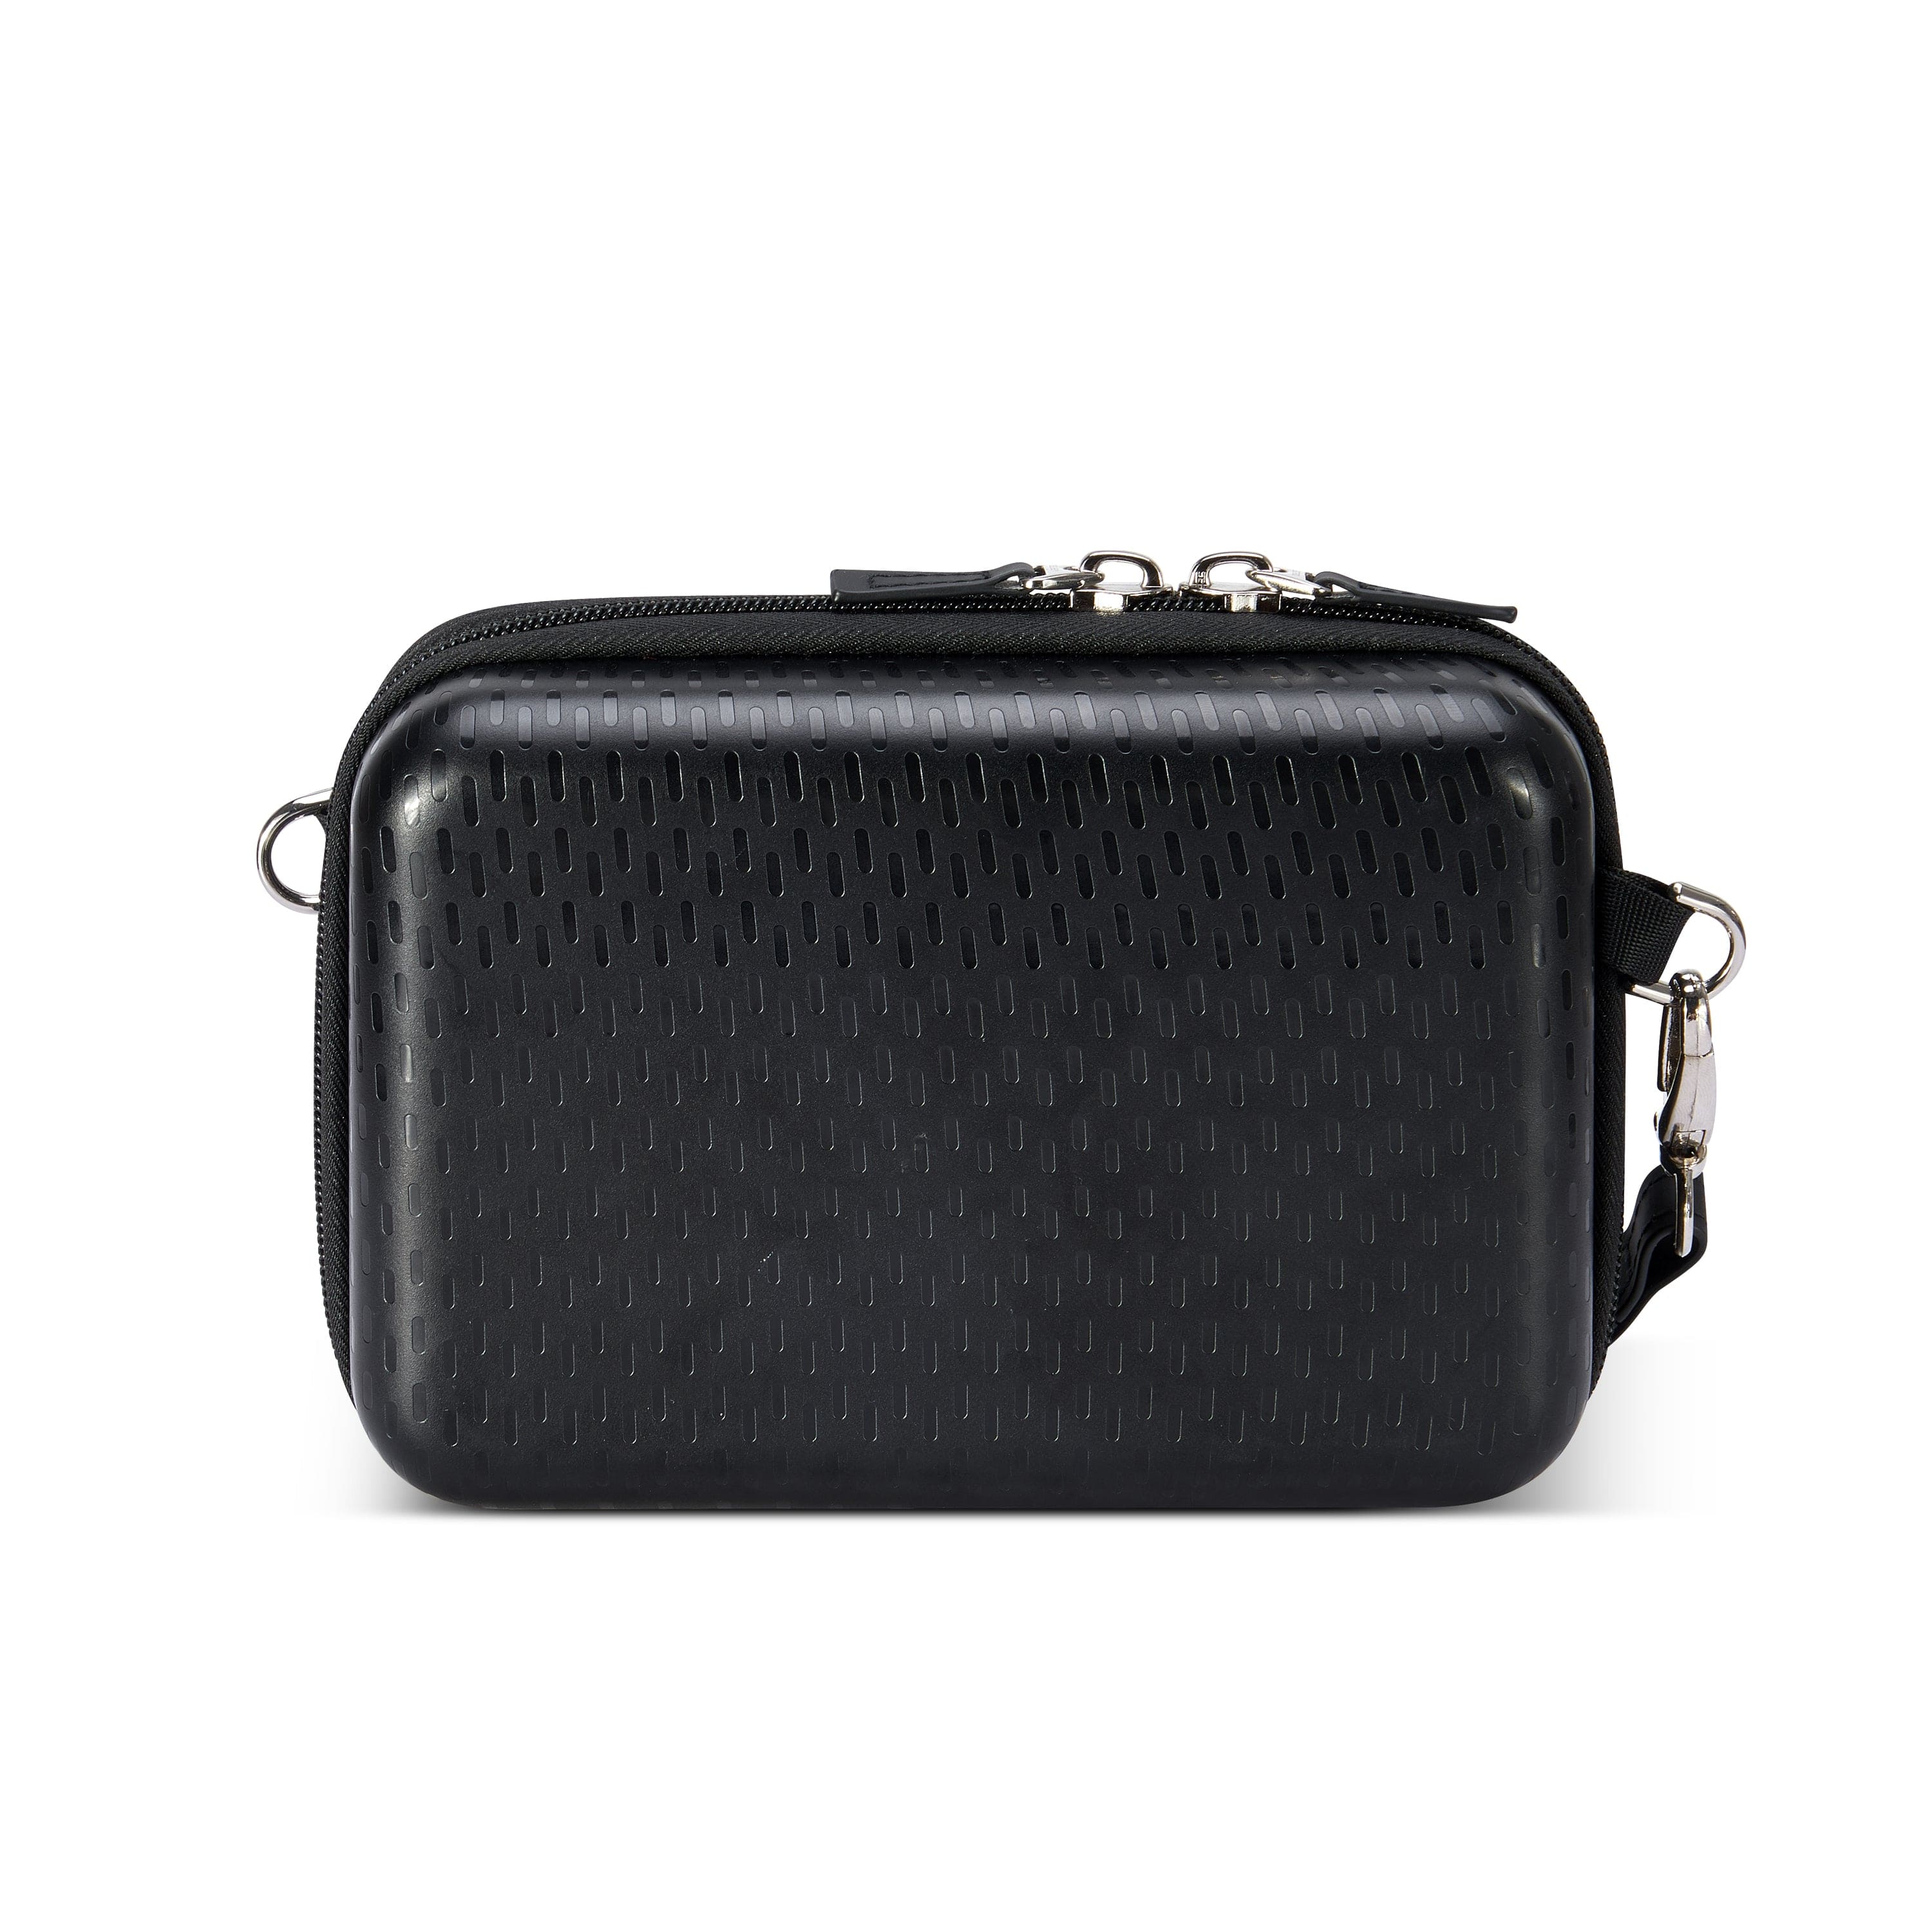 Delsey Turenne Hardcase Clutch With Removable Shoulder Strap Black - 00162111500